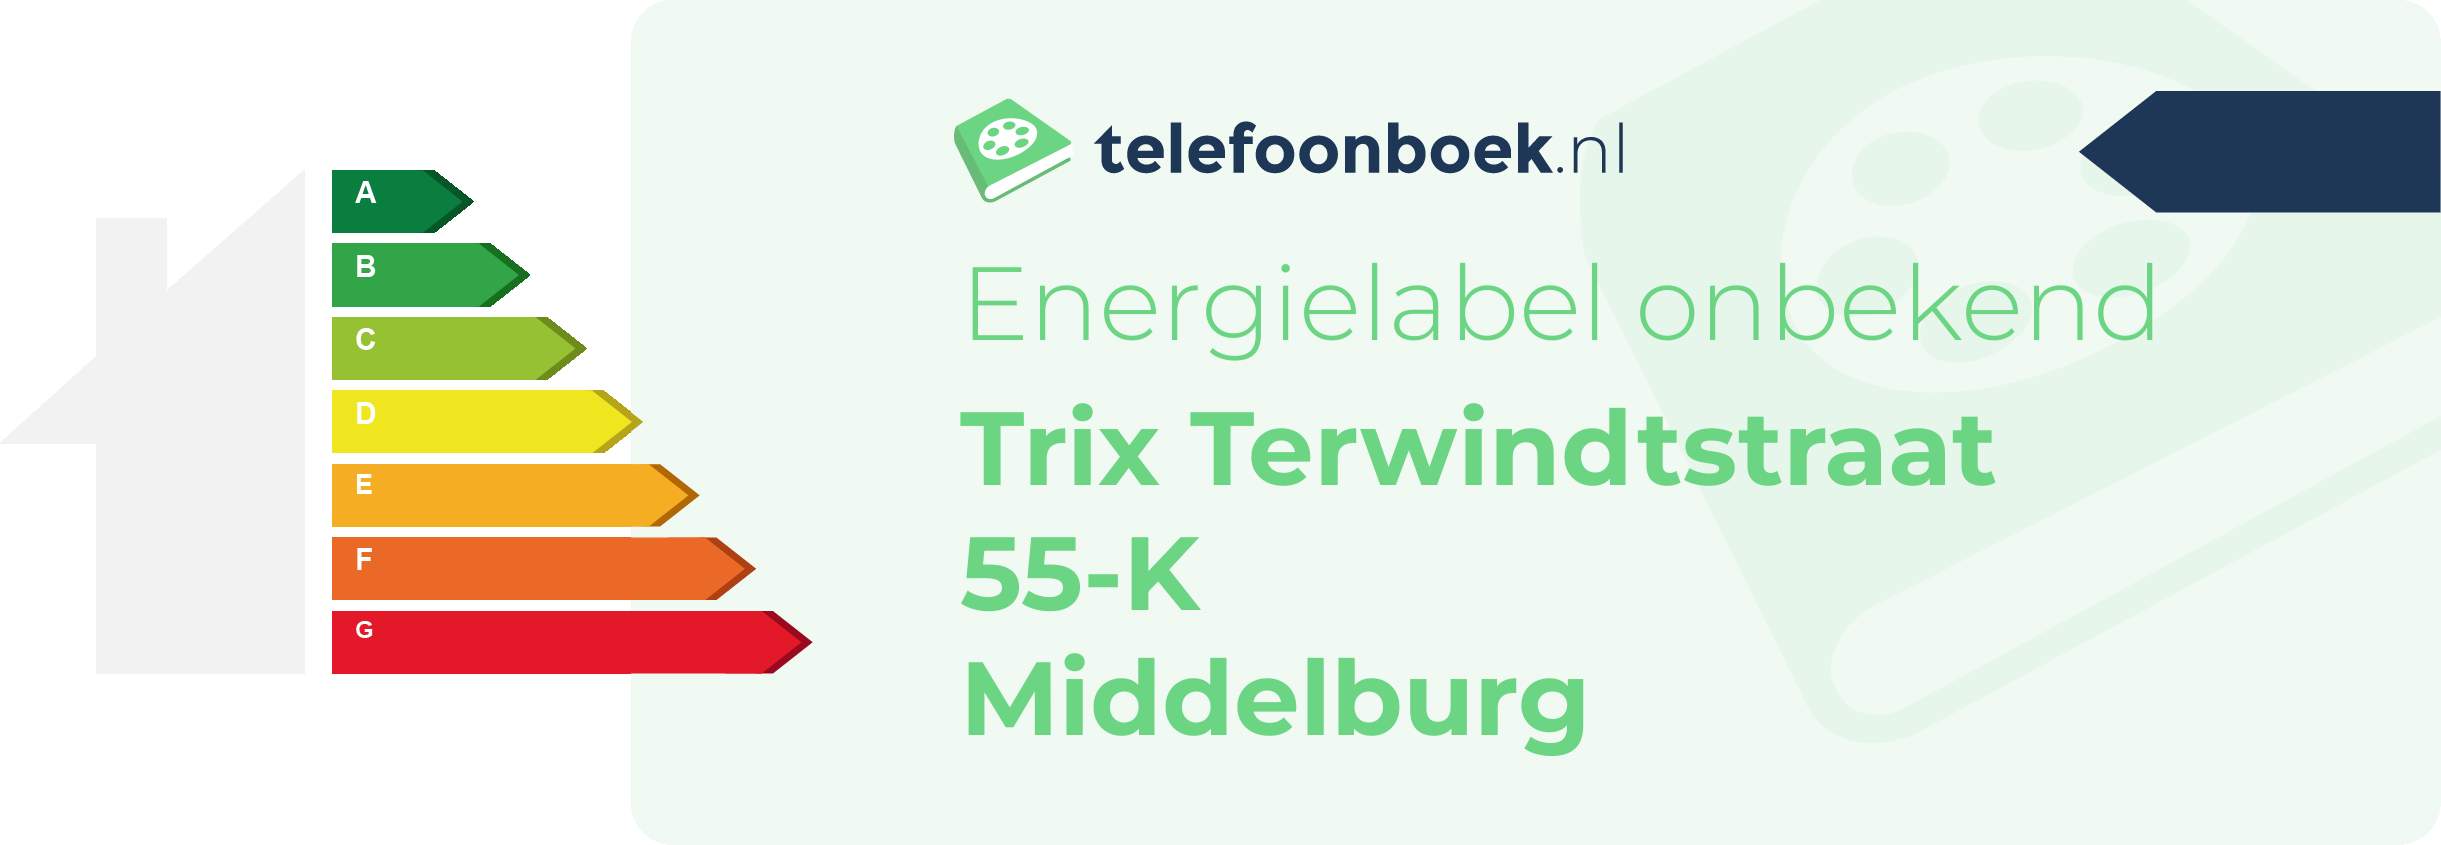 Energielabel Trix Terwindtstraat 55-K Middelburg